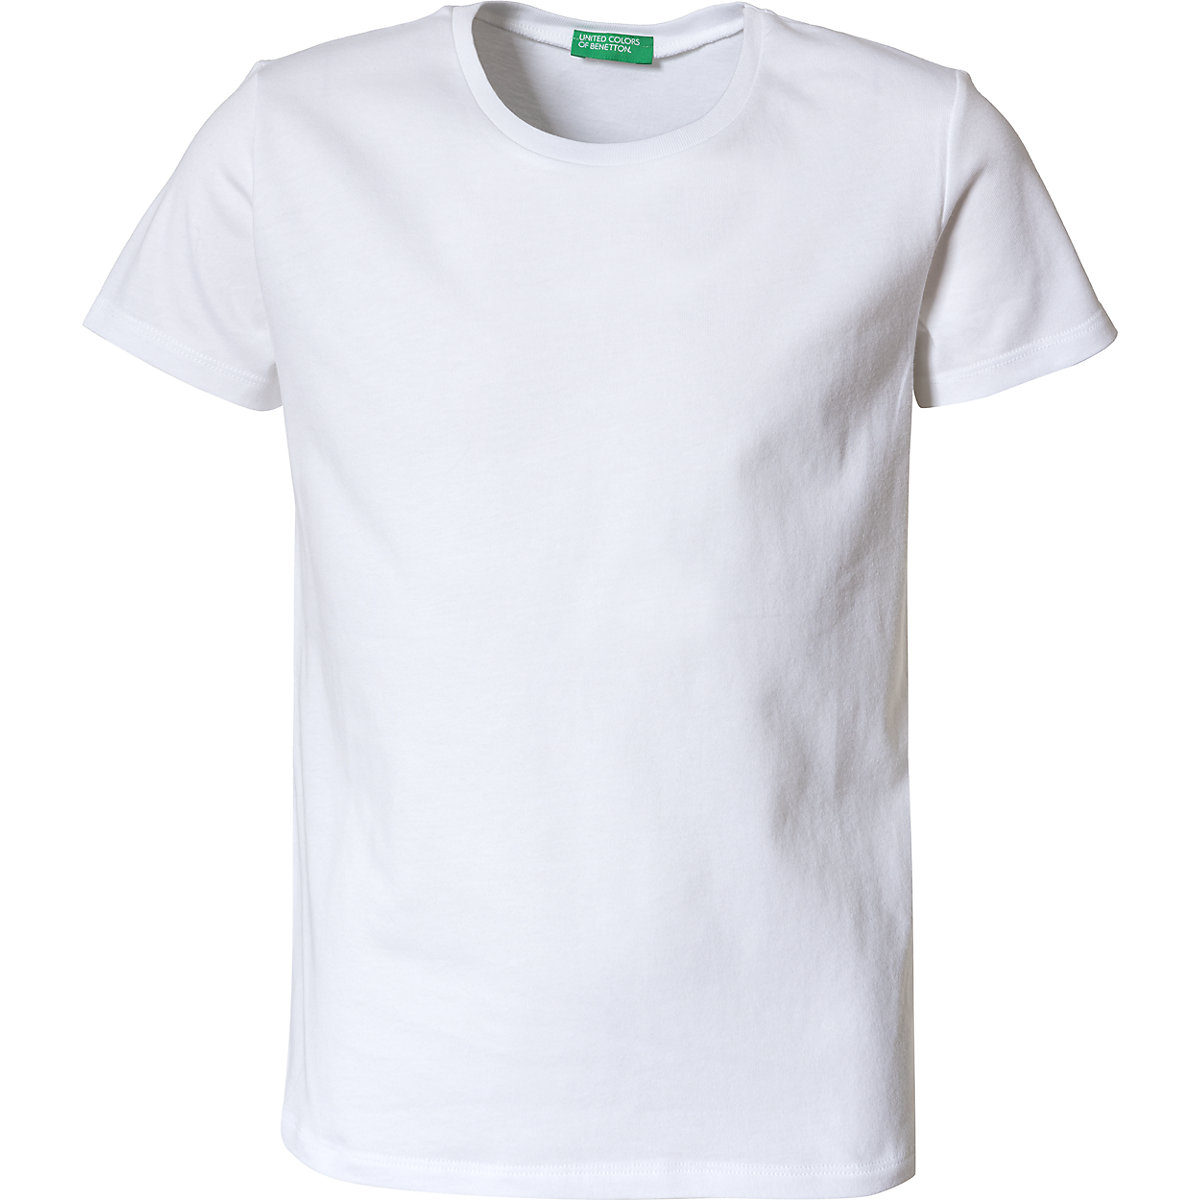 United Colors of Benetton T-Shirt für Mädchen weiß